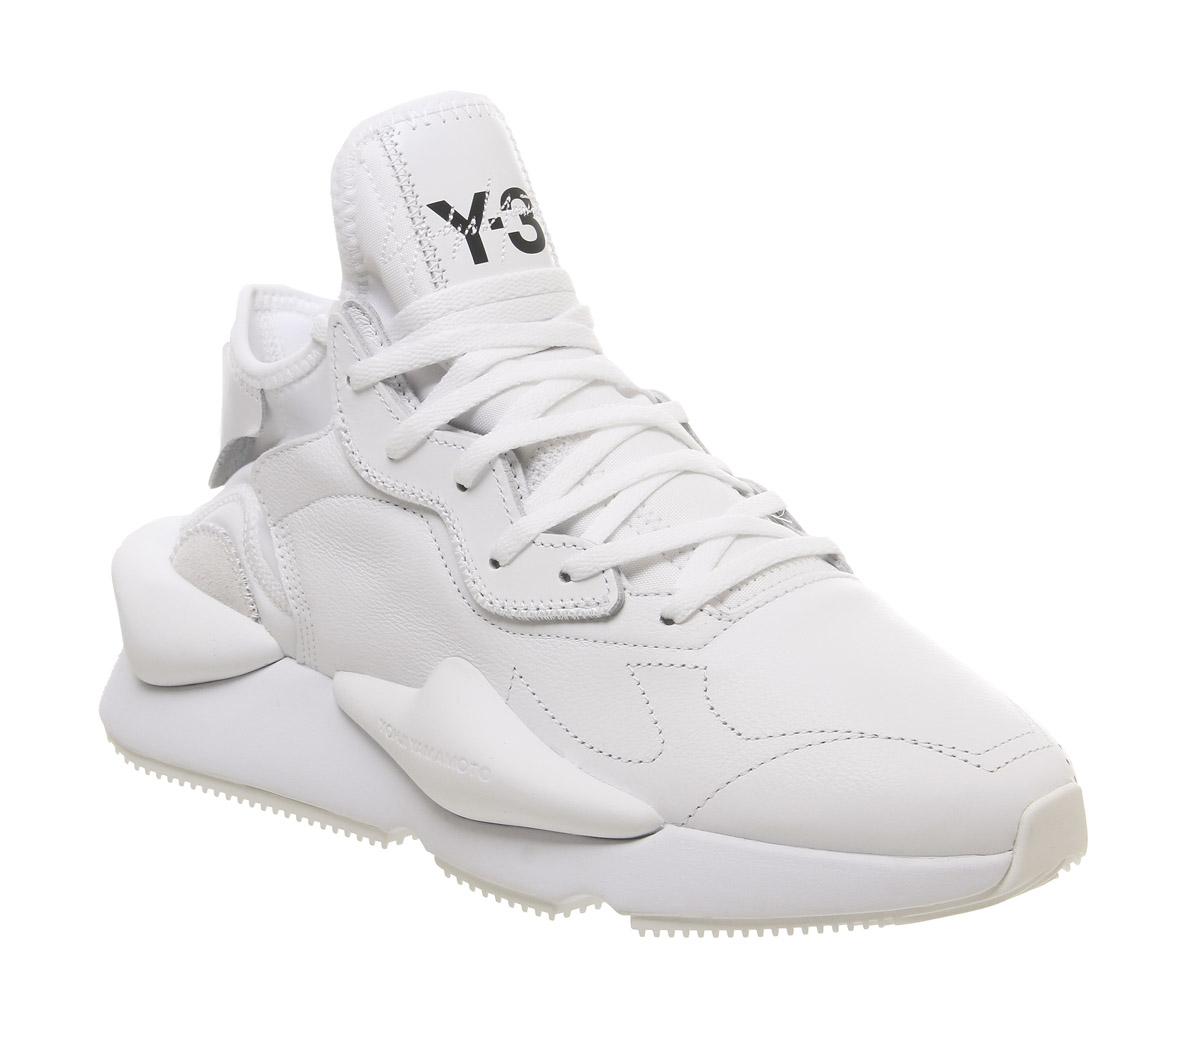 Buy Adidas Y-3 by Yohji Yamamoto Men's Y 3 Kaiwa Medium at